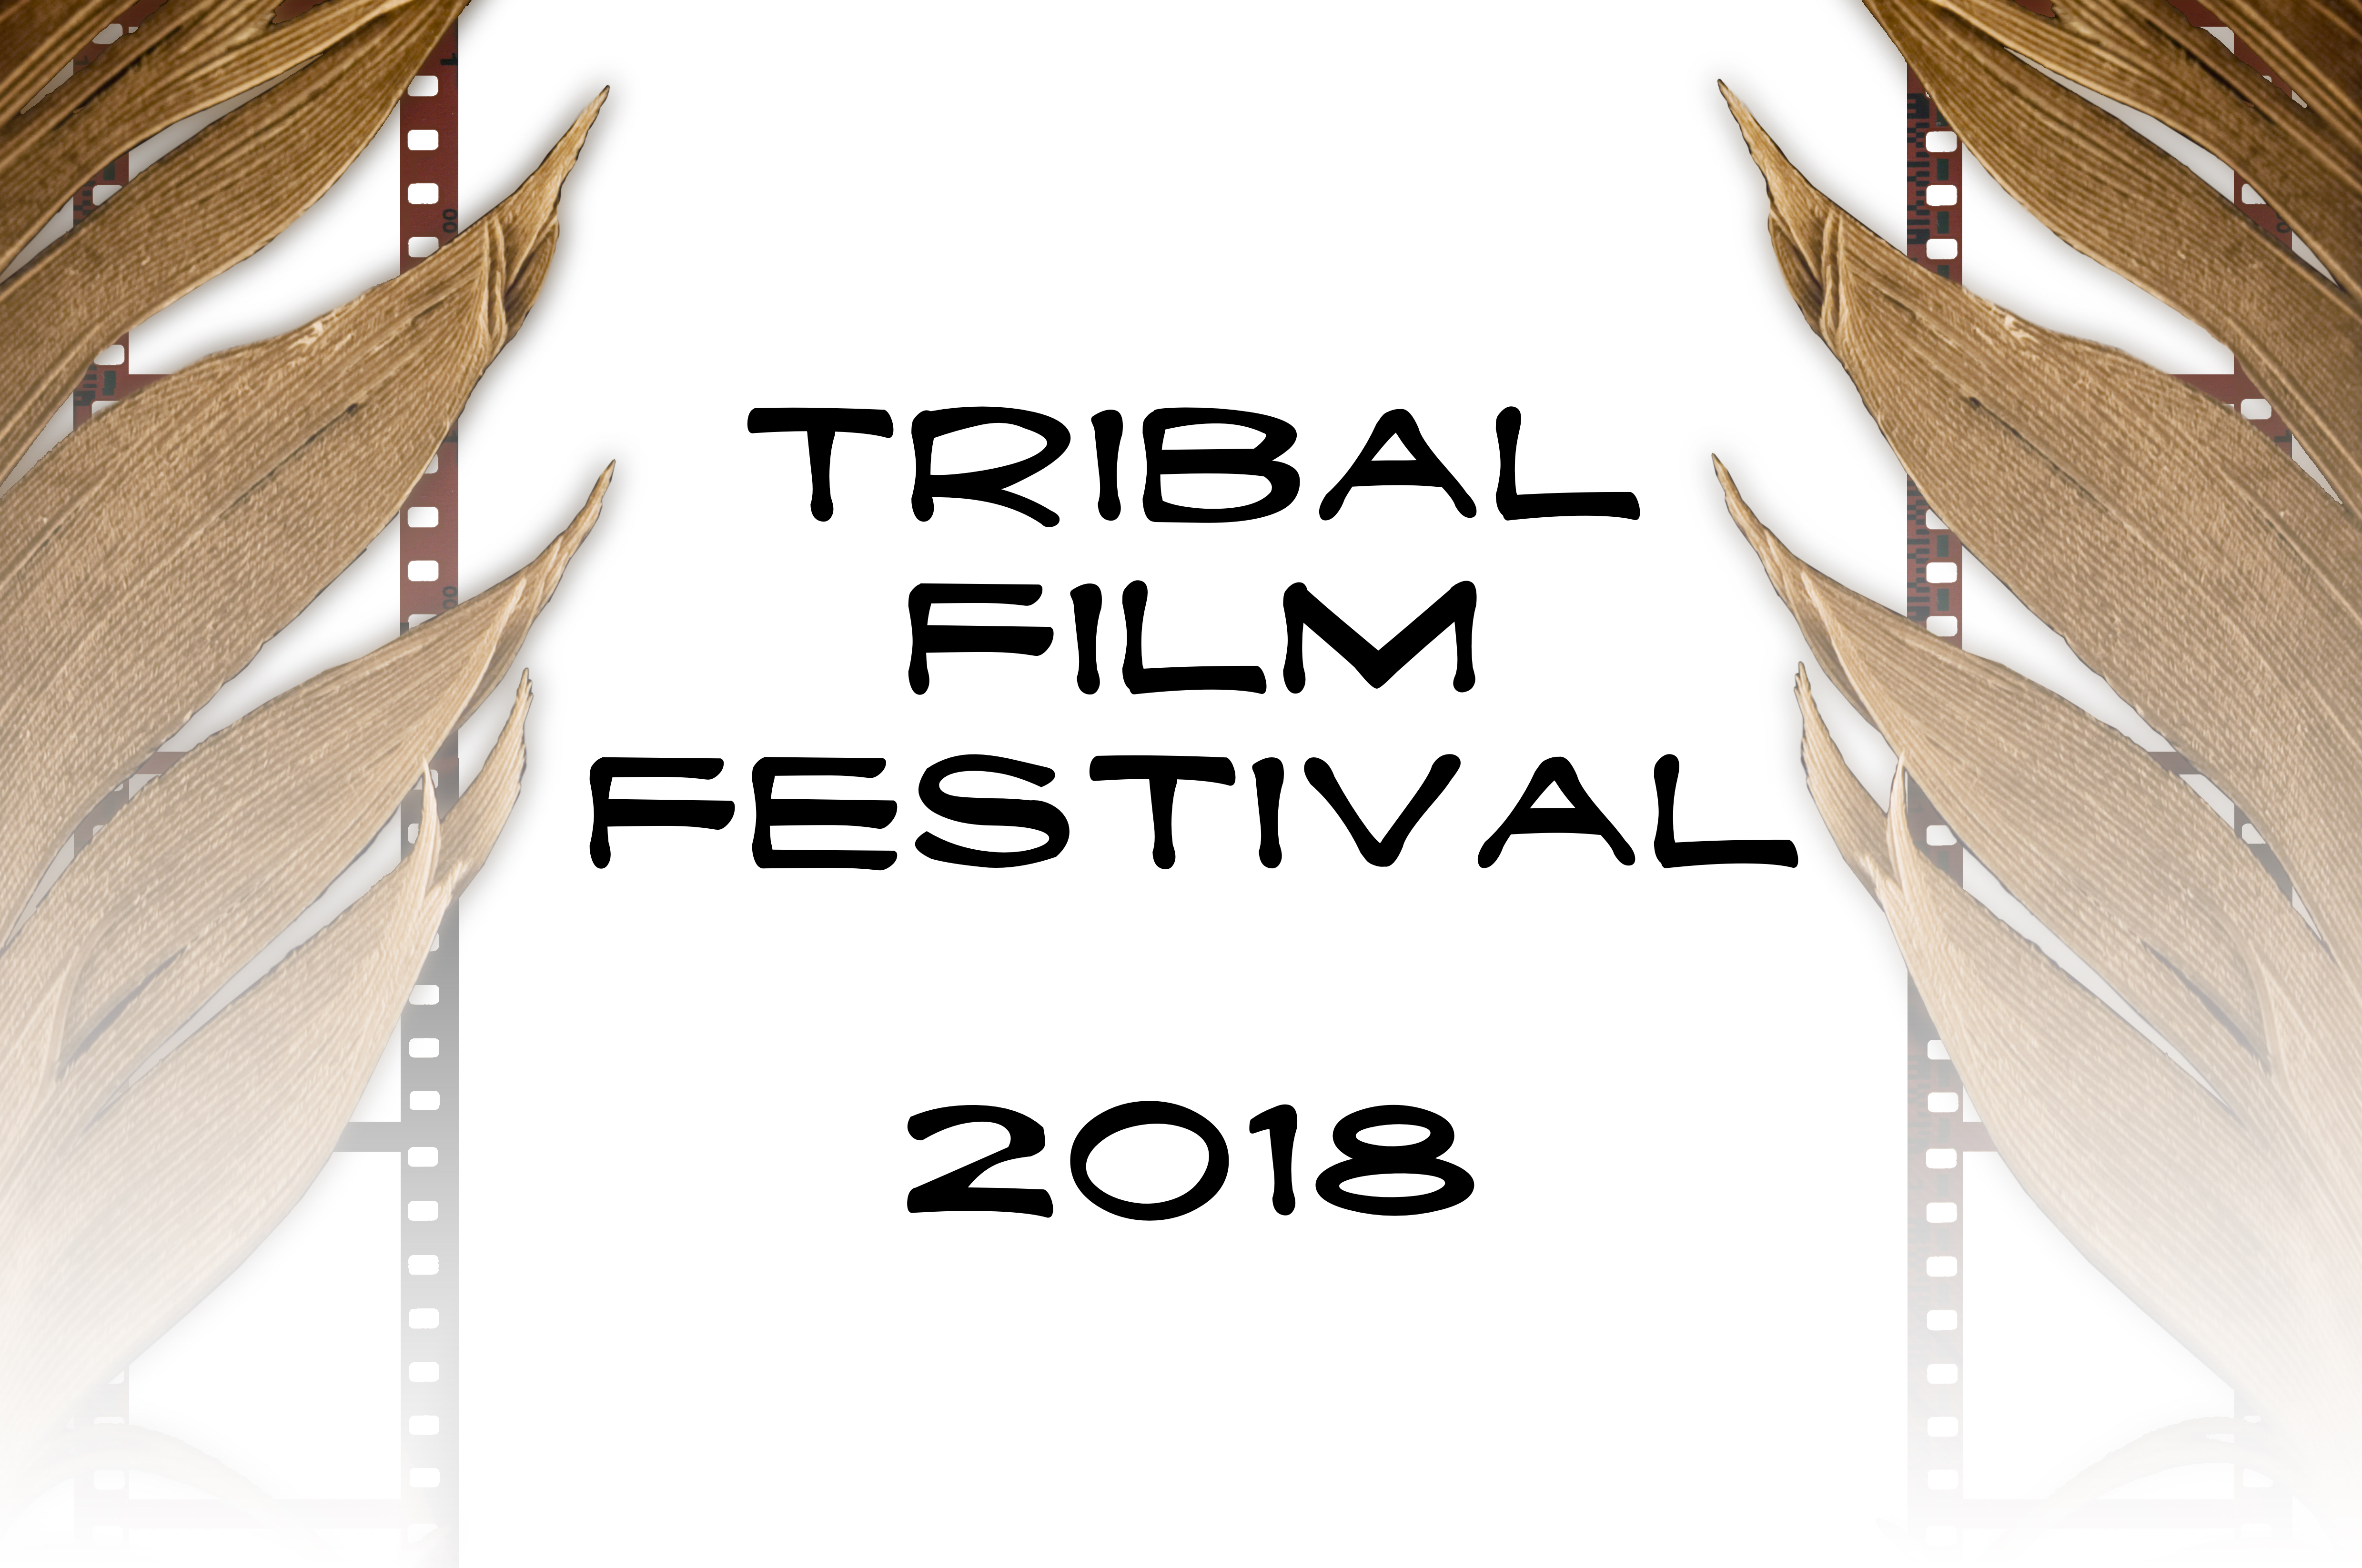 Tribal Film Festival 2018